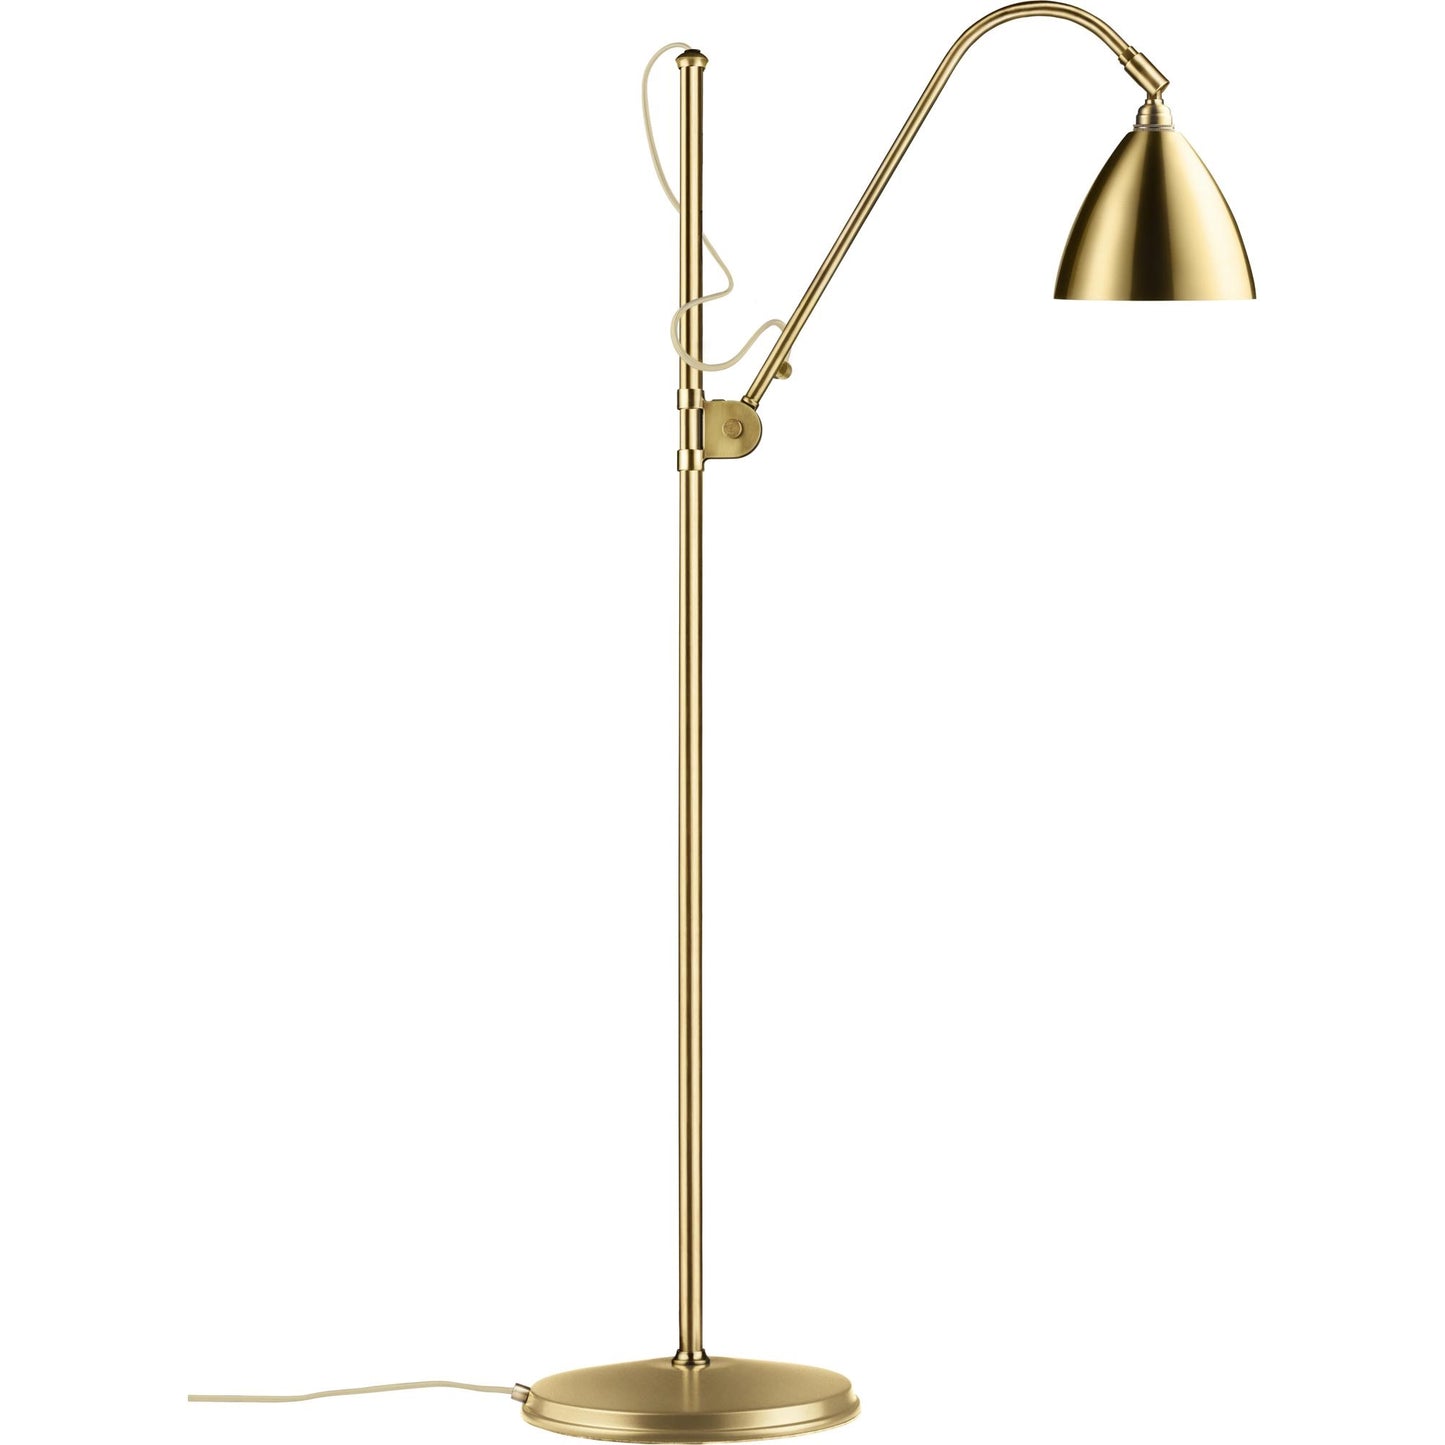 Bestlite BL3M Floor Lamp by GUBI #Brass